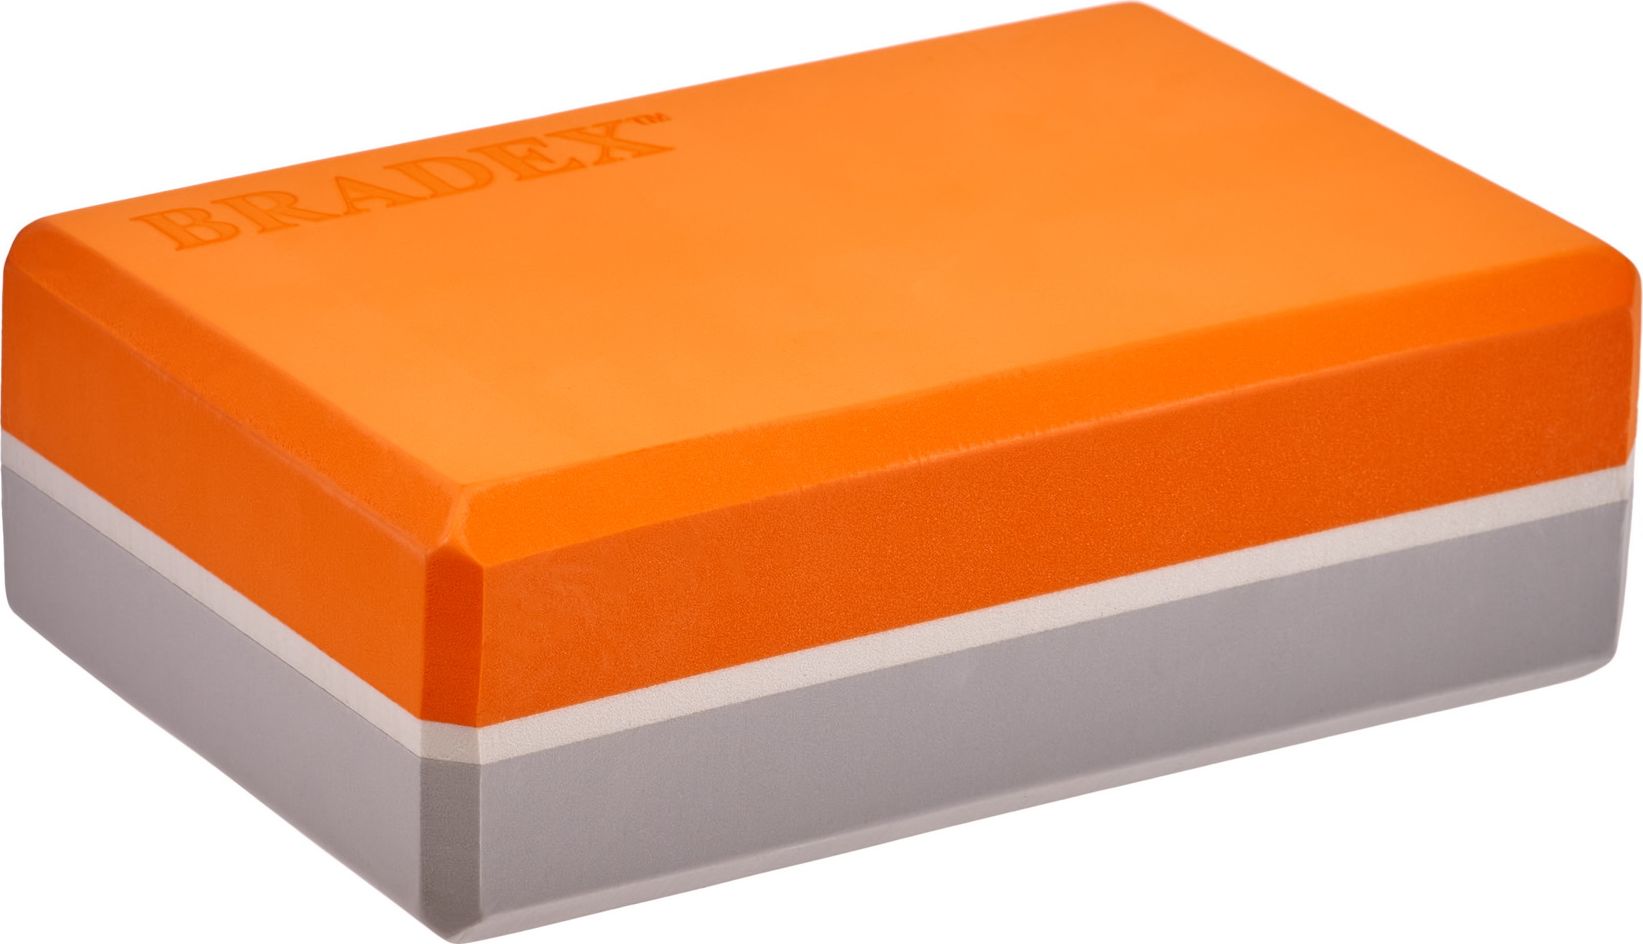 Блок для йоги и фитнеса Bradex, оранжевый/серый